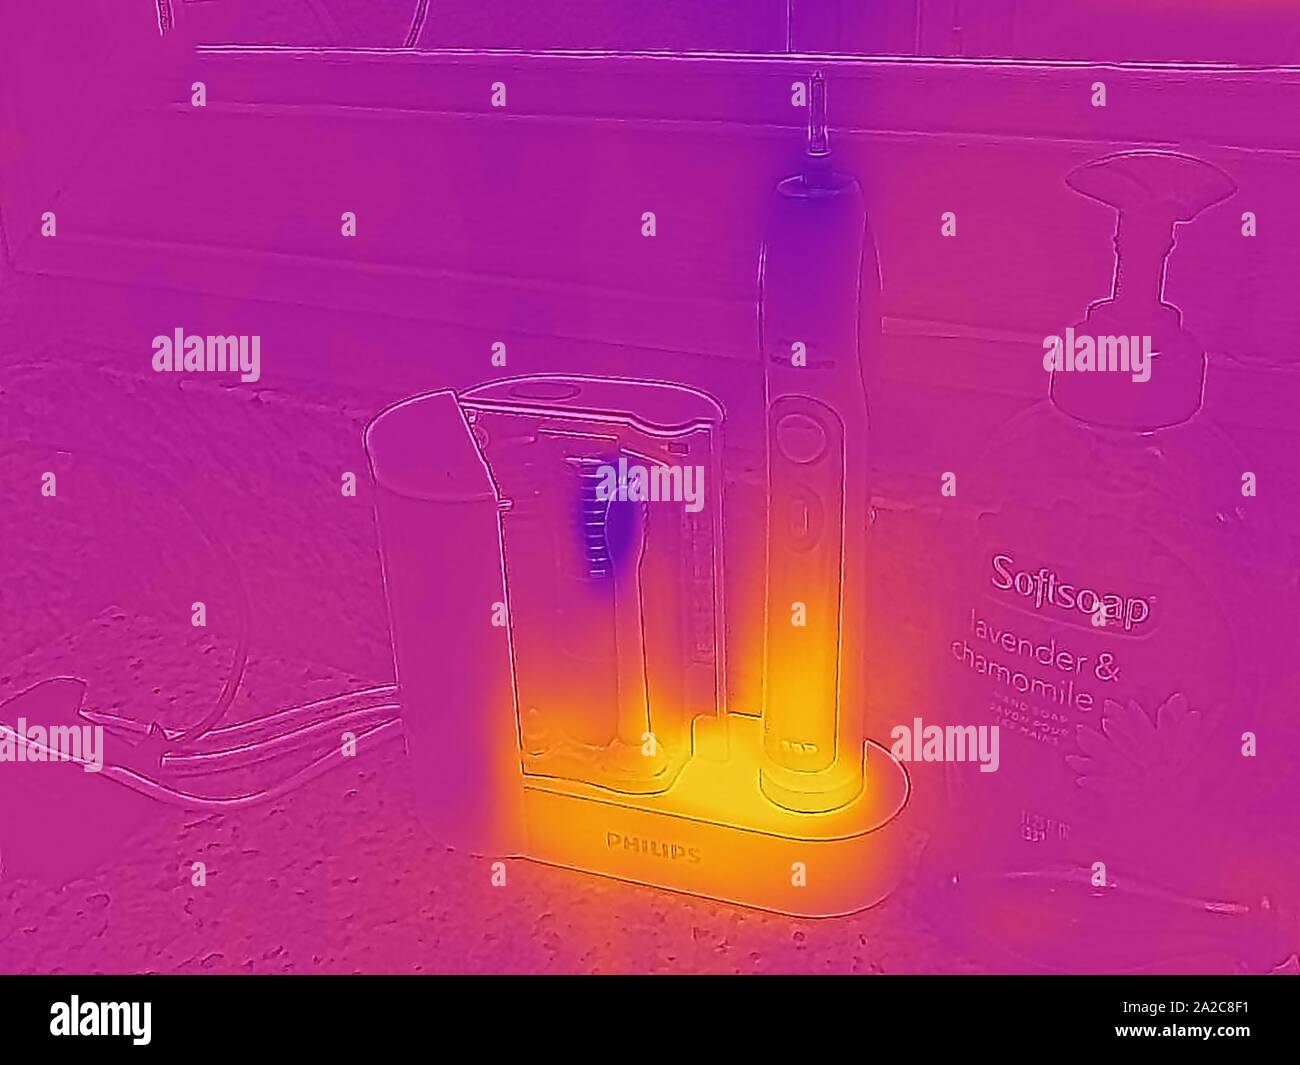 Thermografiebild der Wärmebildkamera mit Lichtbereichen, die höheren Temperaturen entsprechen und Abwärme zeigen, die von der elektrischen Zahnbürste von Philips in einem Hausbad erzeugt wird, ein Beispiel für Phantomlast oder Bereitschaftsstromabfälle, das im folgenden als Vampirleistung oder Geisterlast bezeichnet wird, San Ramon, Kalifornien, 2. September 2019. () Stockfoto